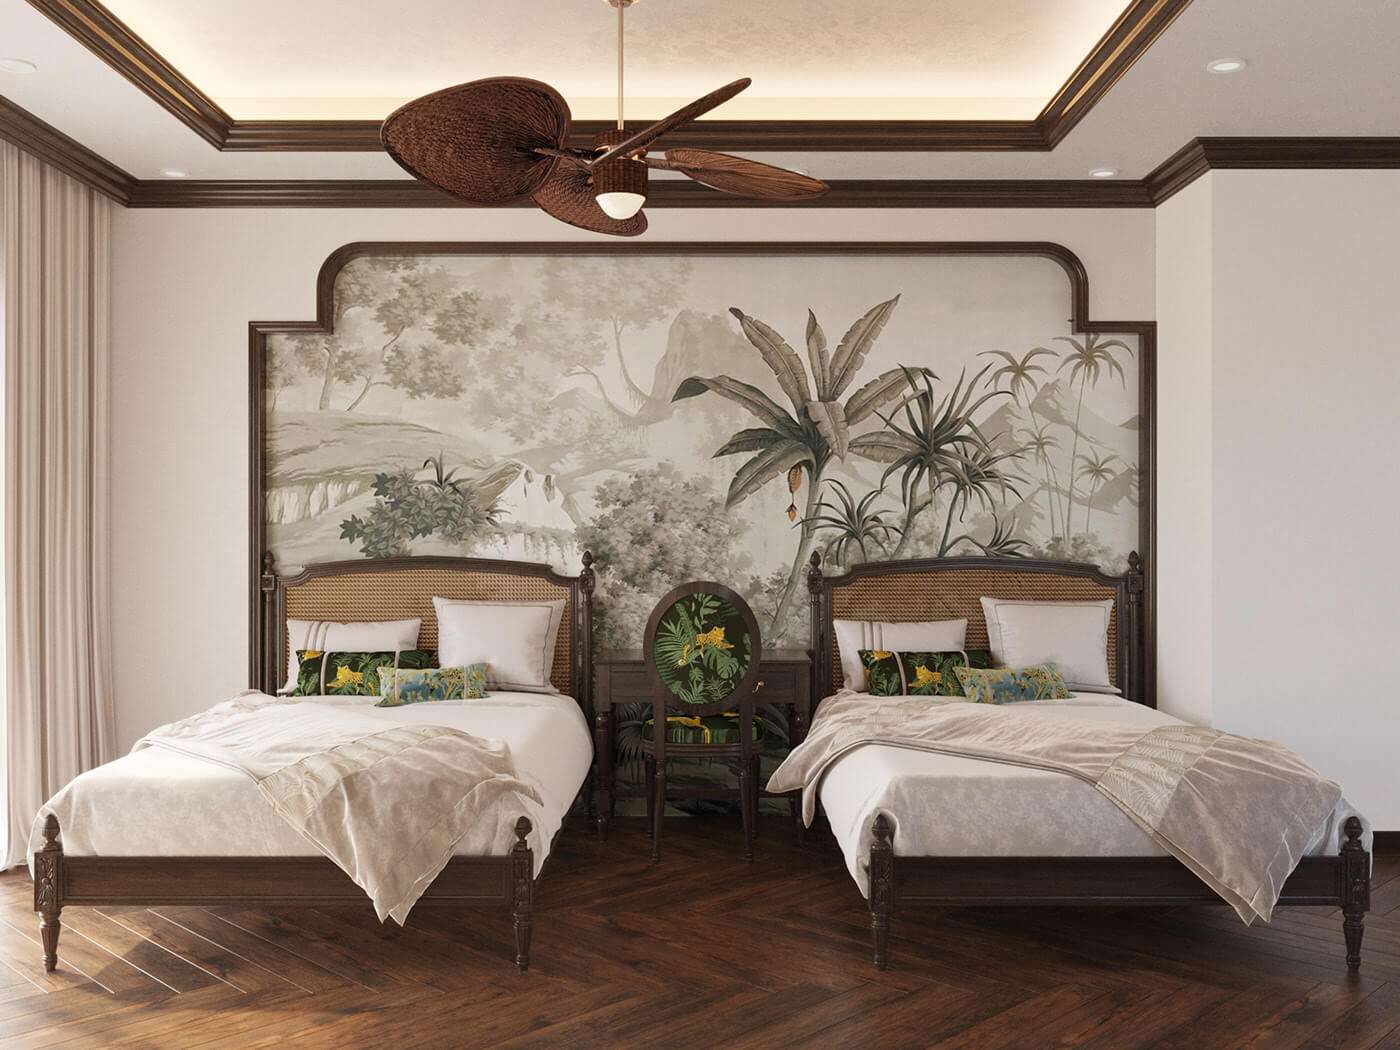 Thiết kế phòng ngủ ấn tượng với tranh treo tường khổ lớn